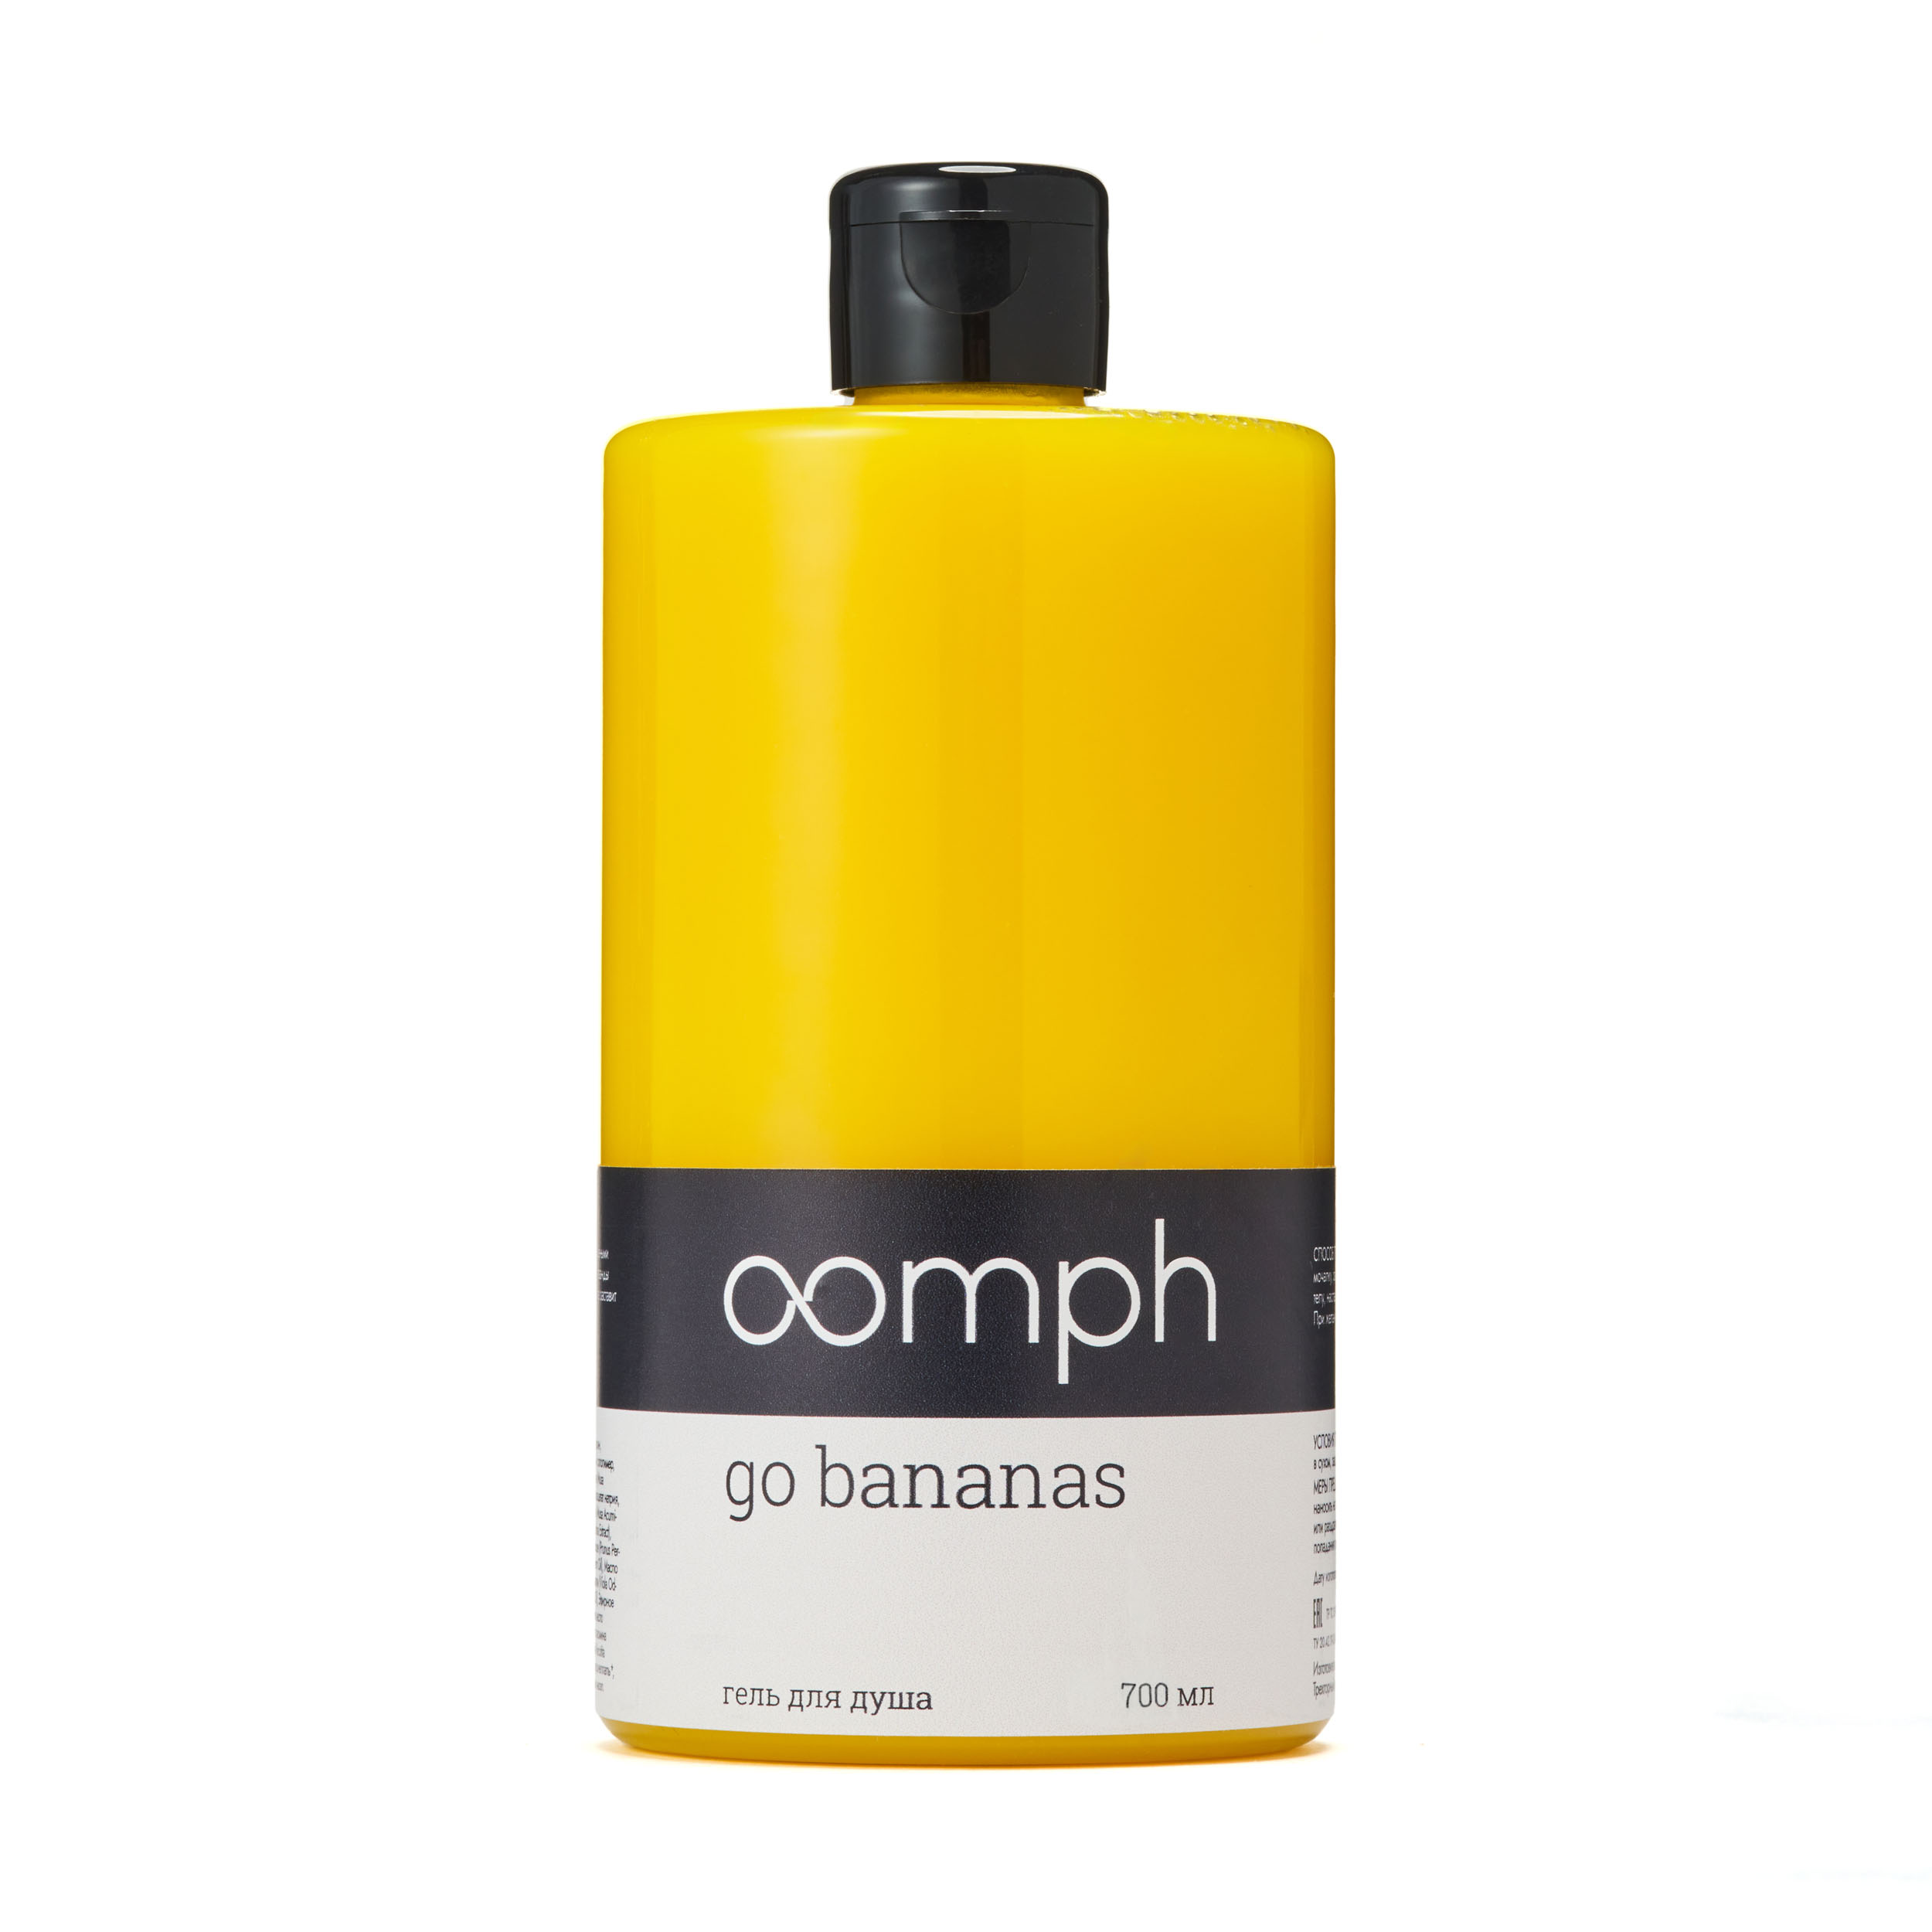 Гель для душа OOMPH Go bananas 700мл мыло гель со смягчающими добавками dolphin phin зеленый банан 5 л 1021767